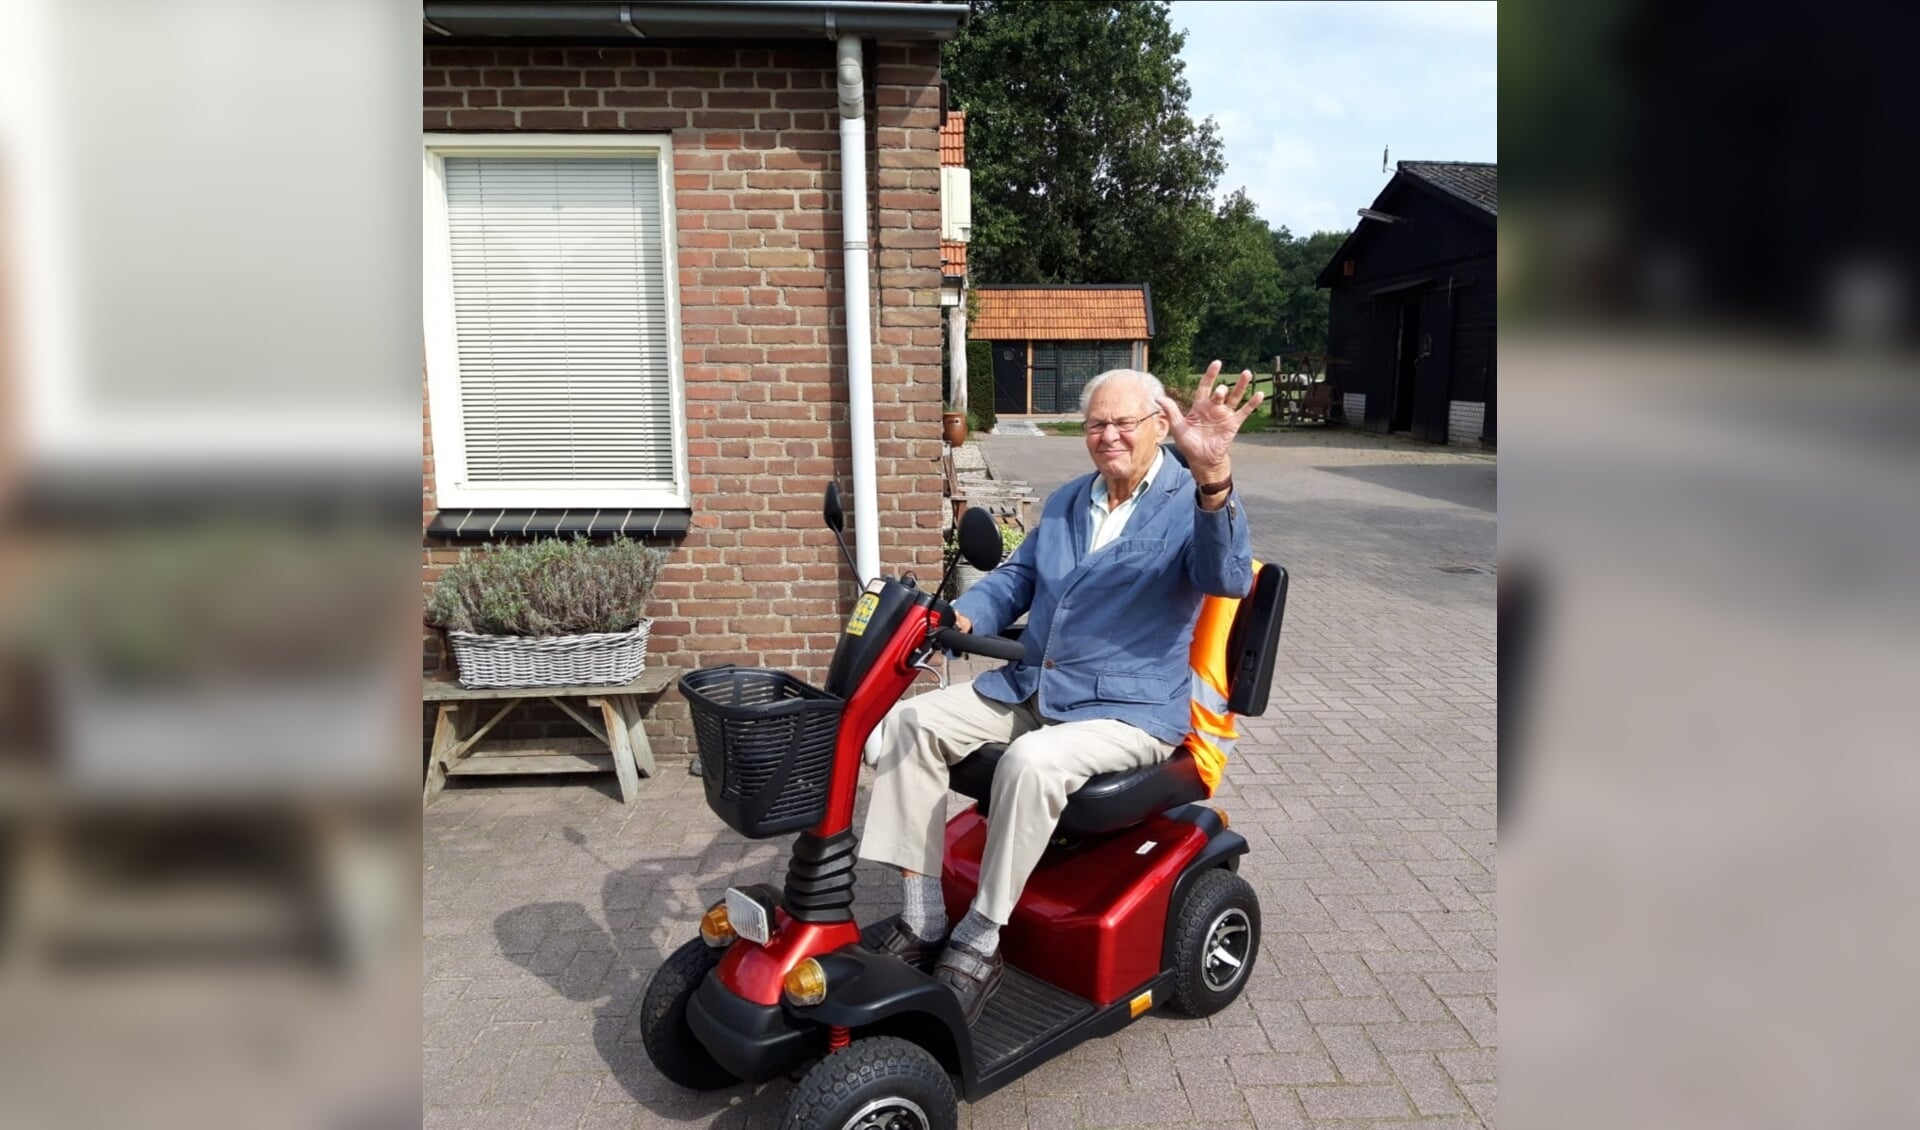 Opa van Vliet bezig met zijn rondje op zijn scootmobiel.